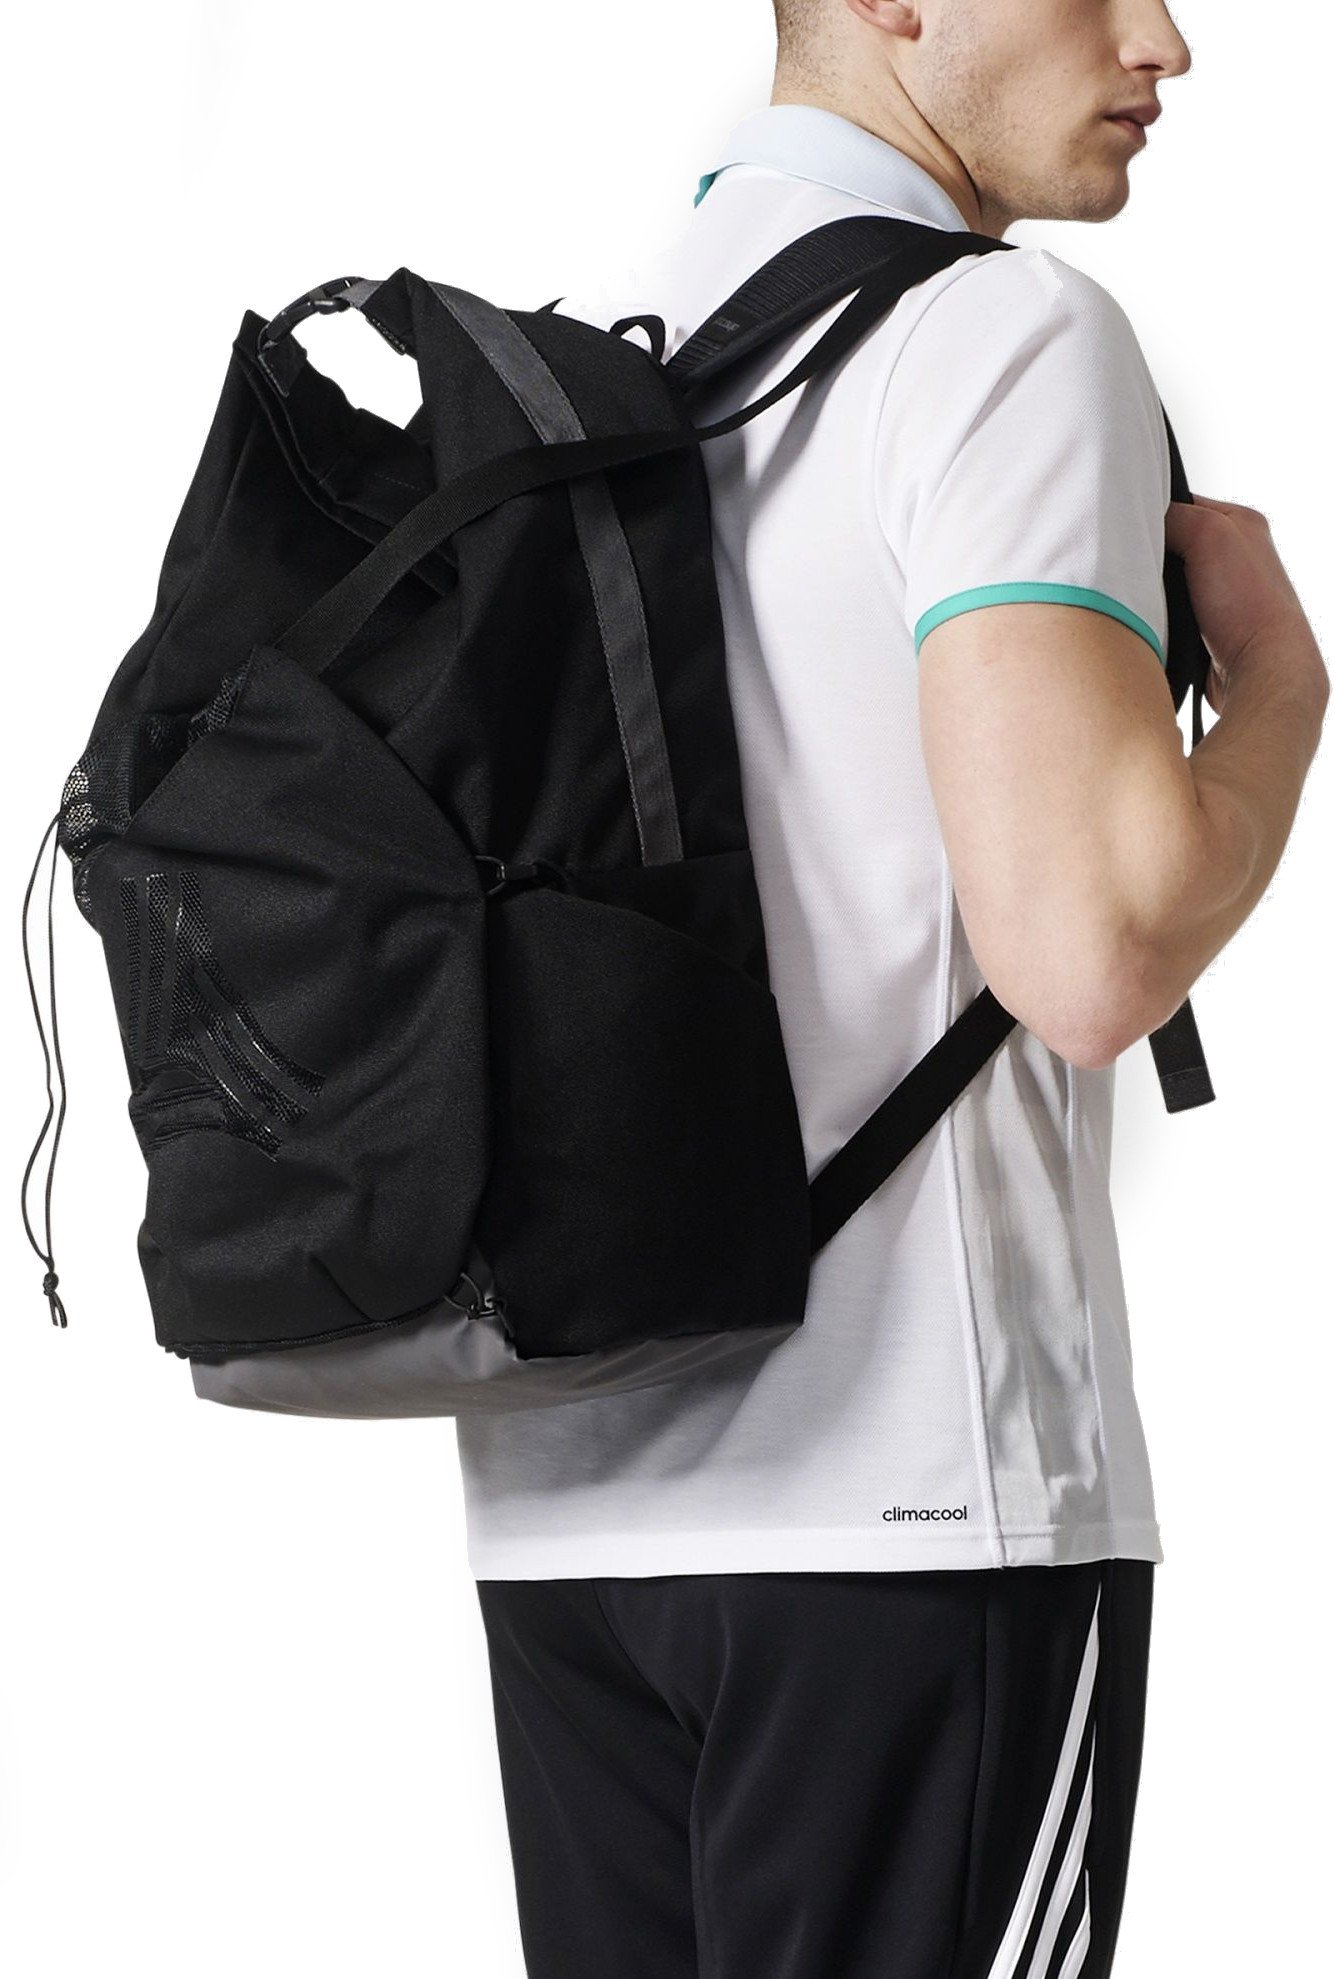 adidas tango backpack